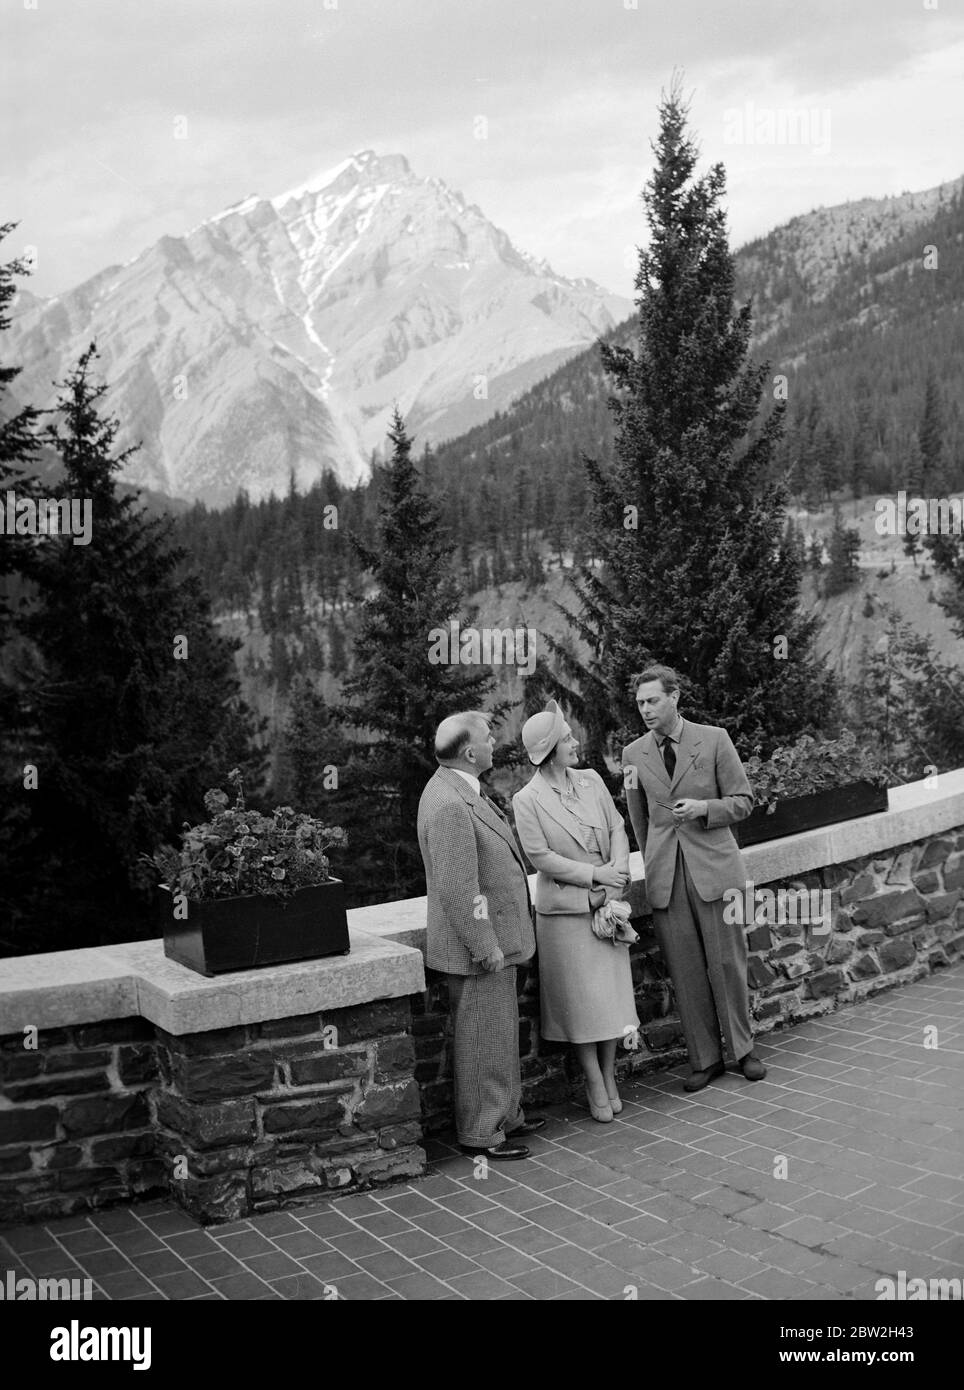 La tournée royale du Canada et des États-Unis par le roi George VI et la reine Elizabeth , 1939 le roi et la reine avec le premier ministre canadien , Mackenzie King , se détendre sur une terrasse à Banff, dans les Rocheuses canadiennes . Banque D'Images